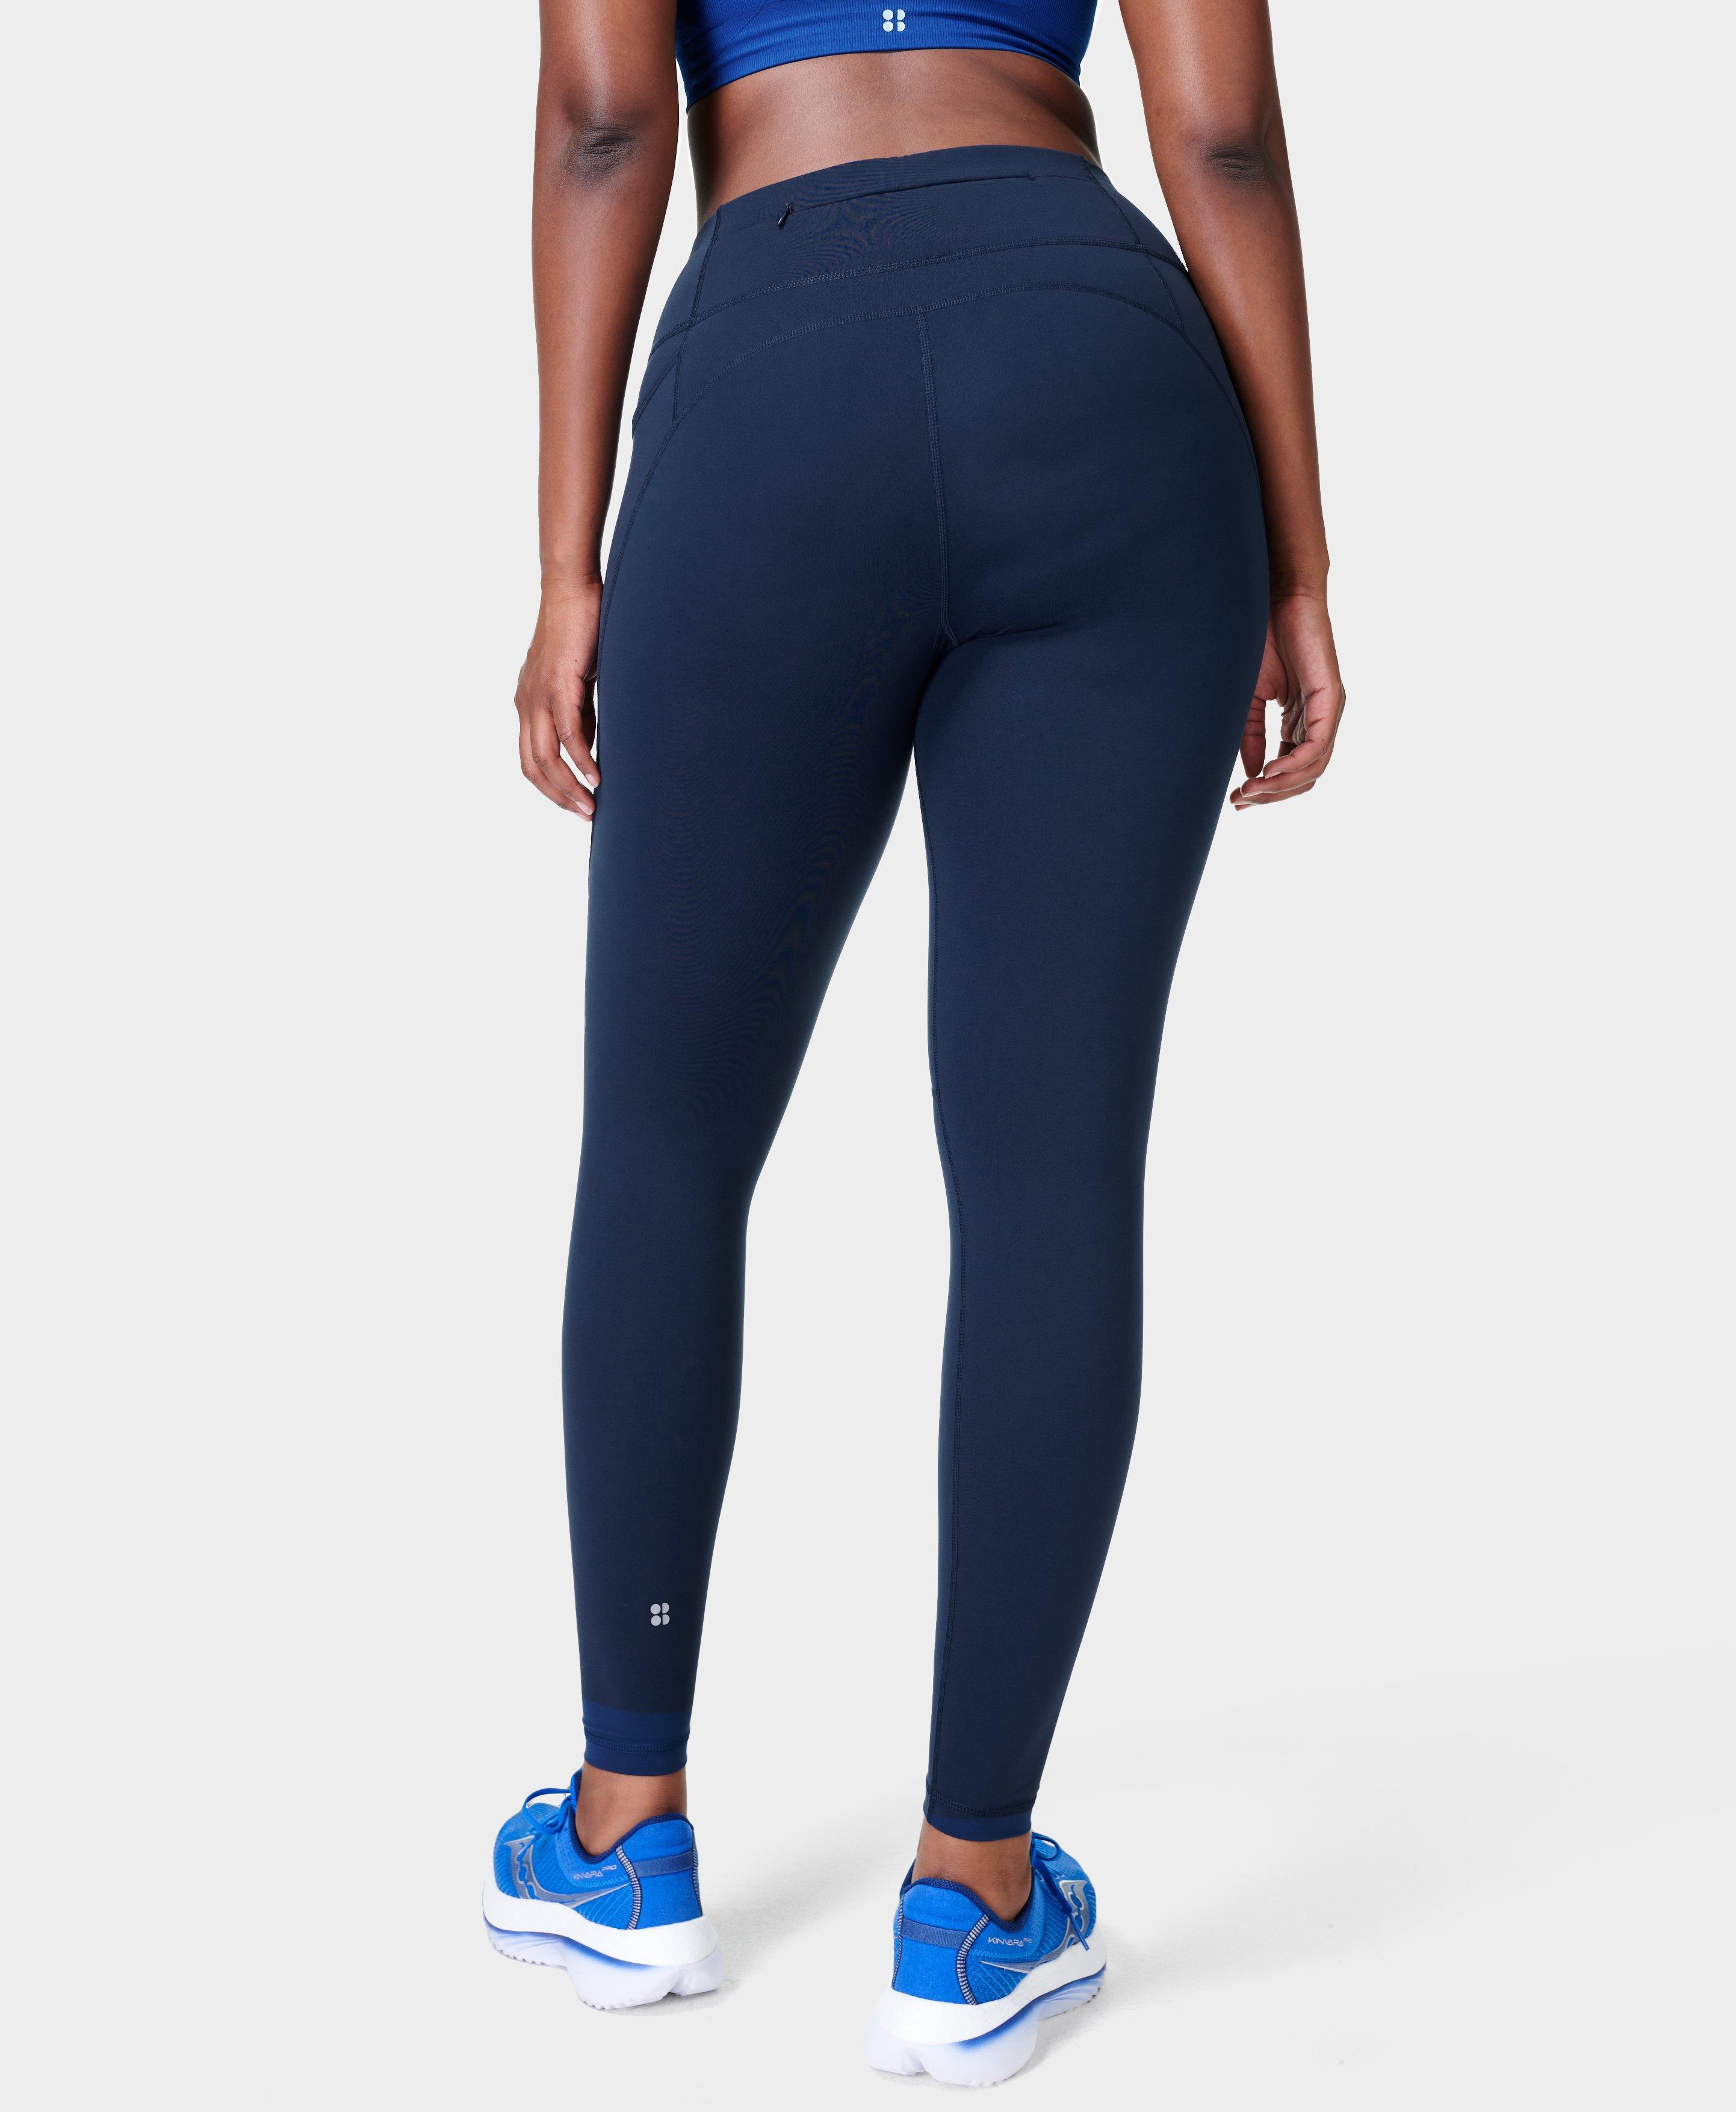 Power Gym Leggings - Navy Blue, Women's Leggings